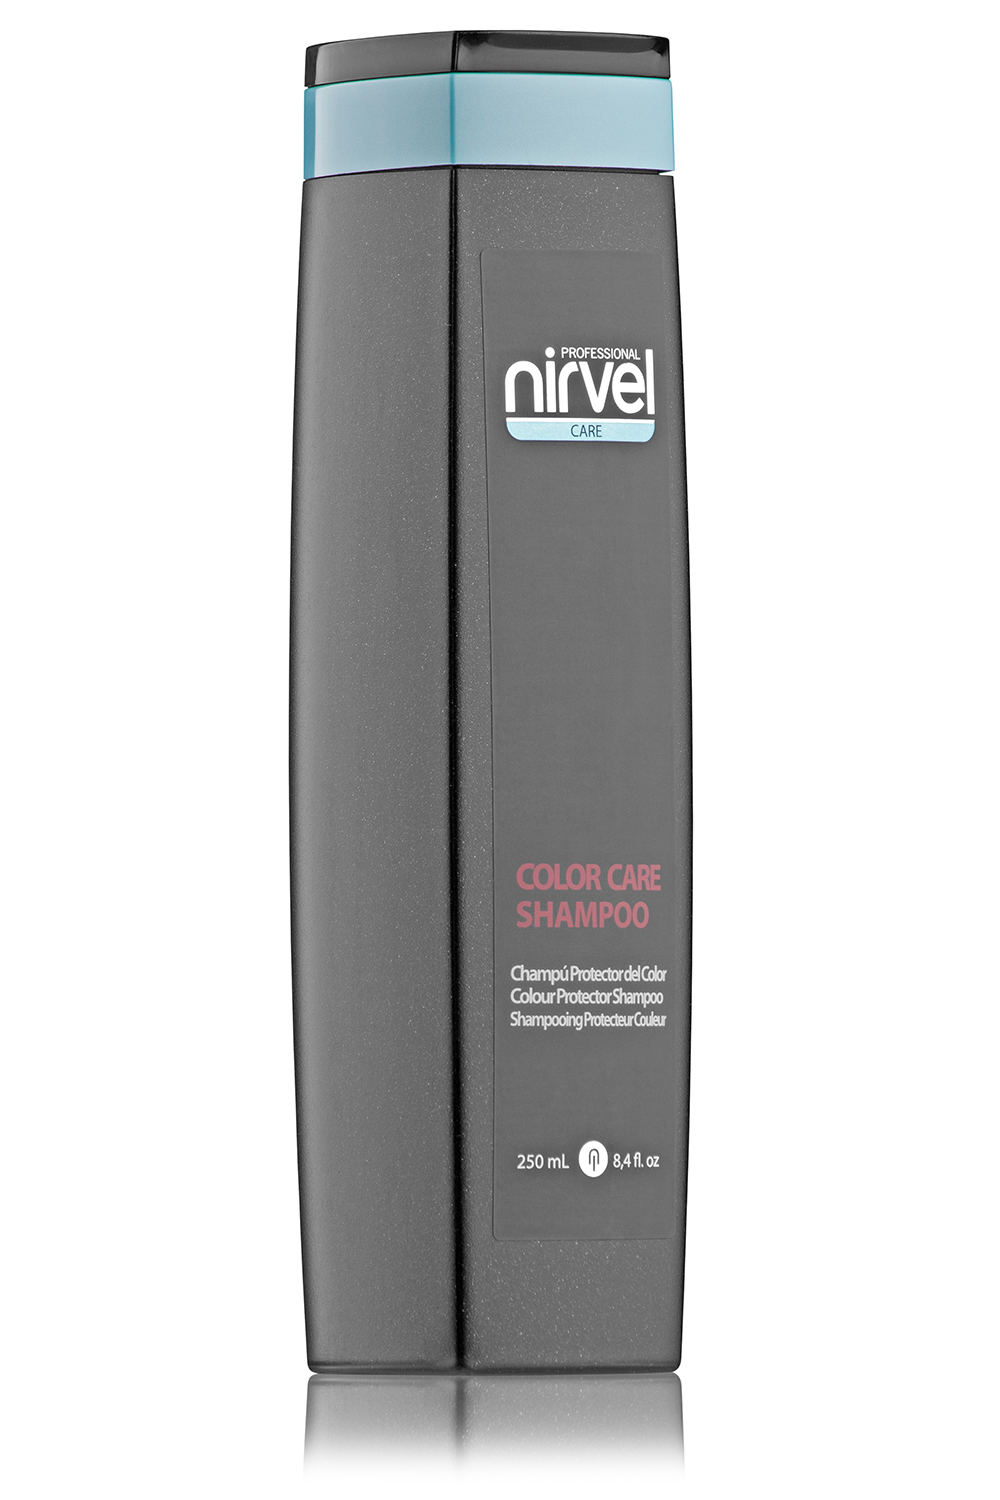 NIRVEL PROFESSIONAL Шампунь для окрашенных волос / COLOR CAR